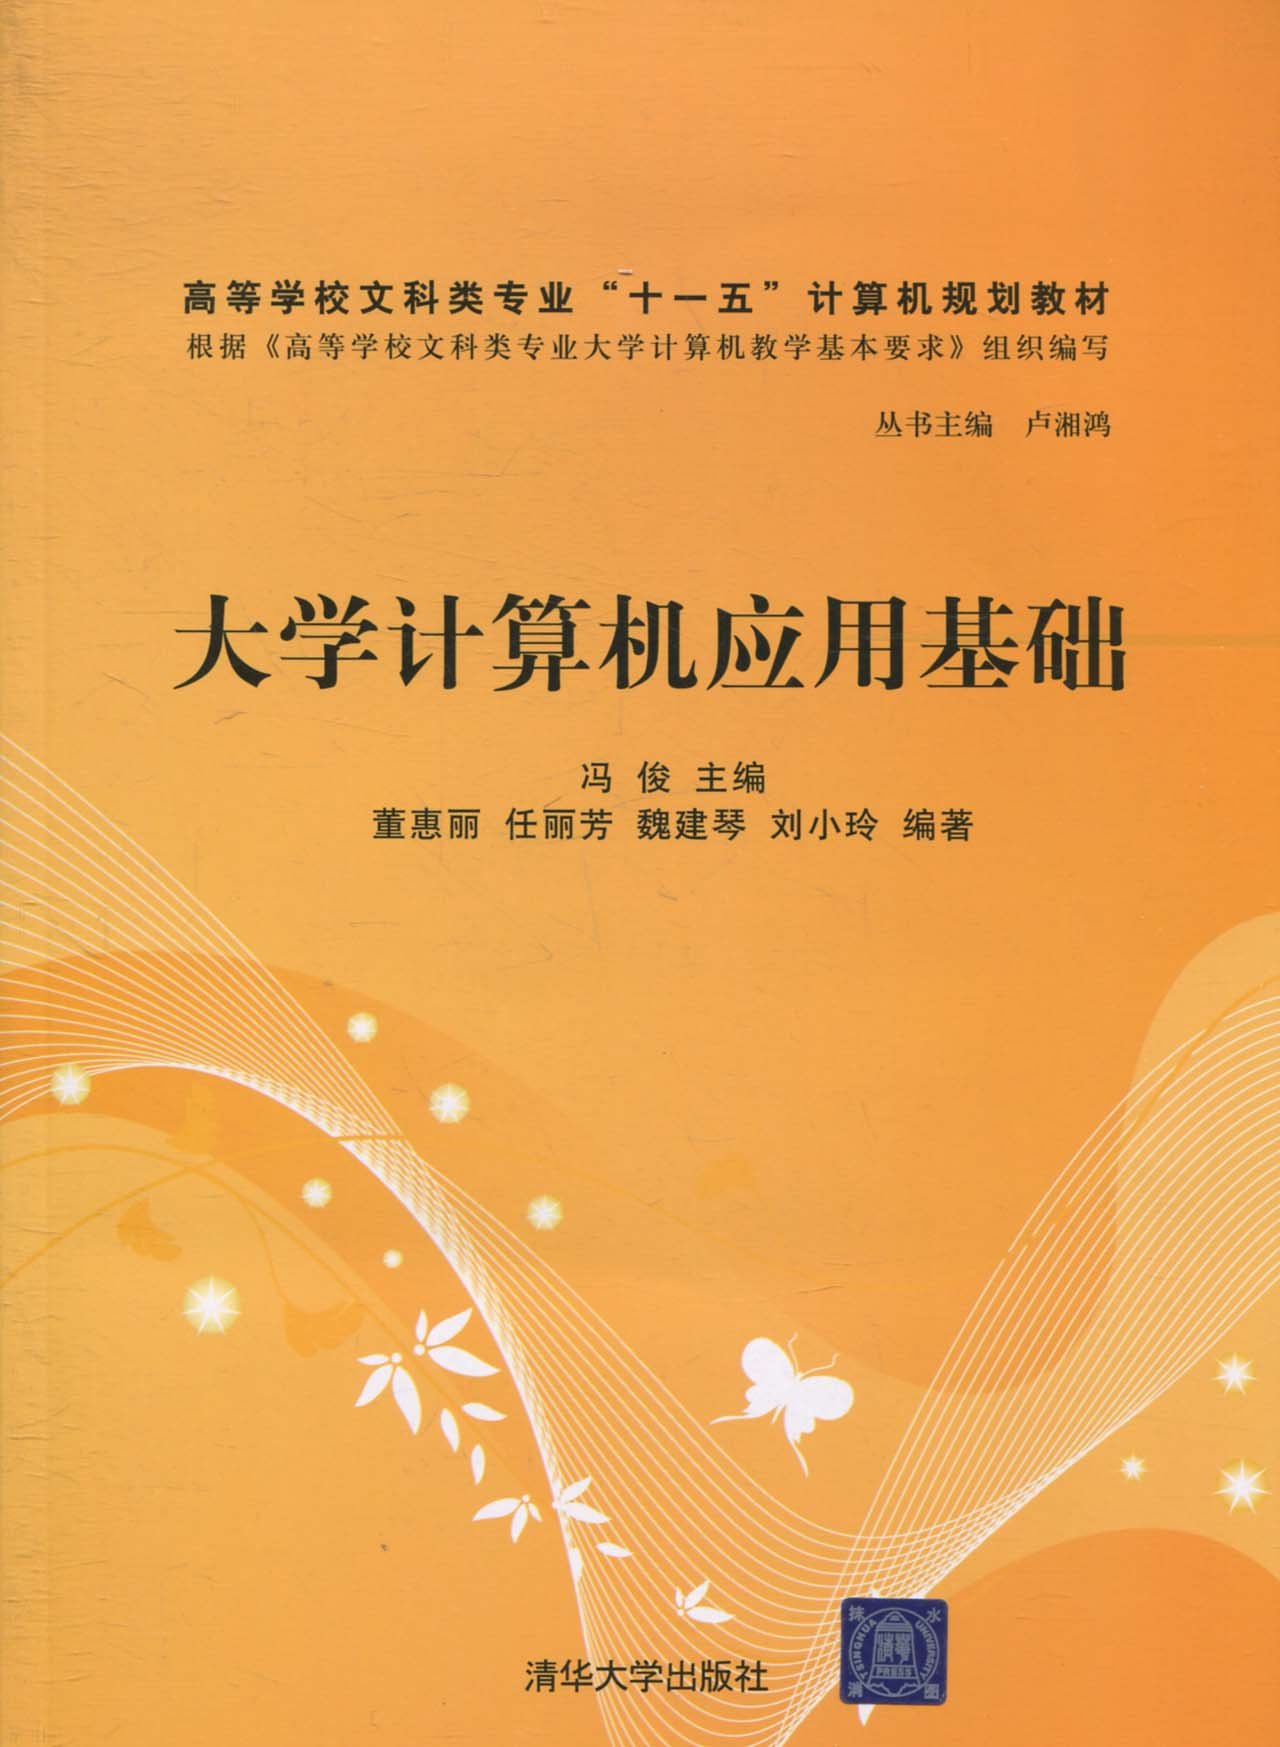 大學計算機套用基礎(2010年清華大學出版社出的圖書)